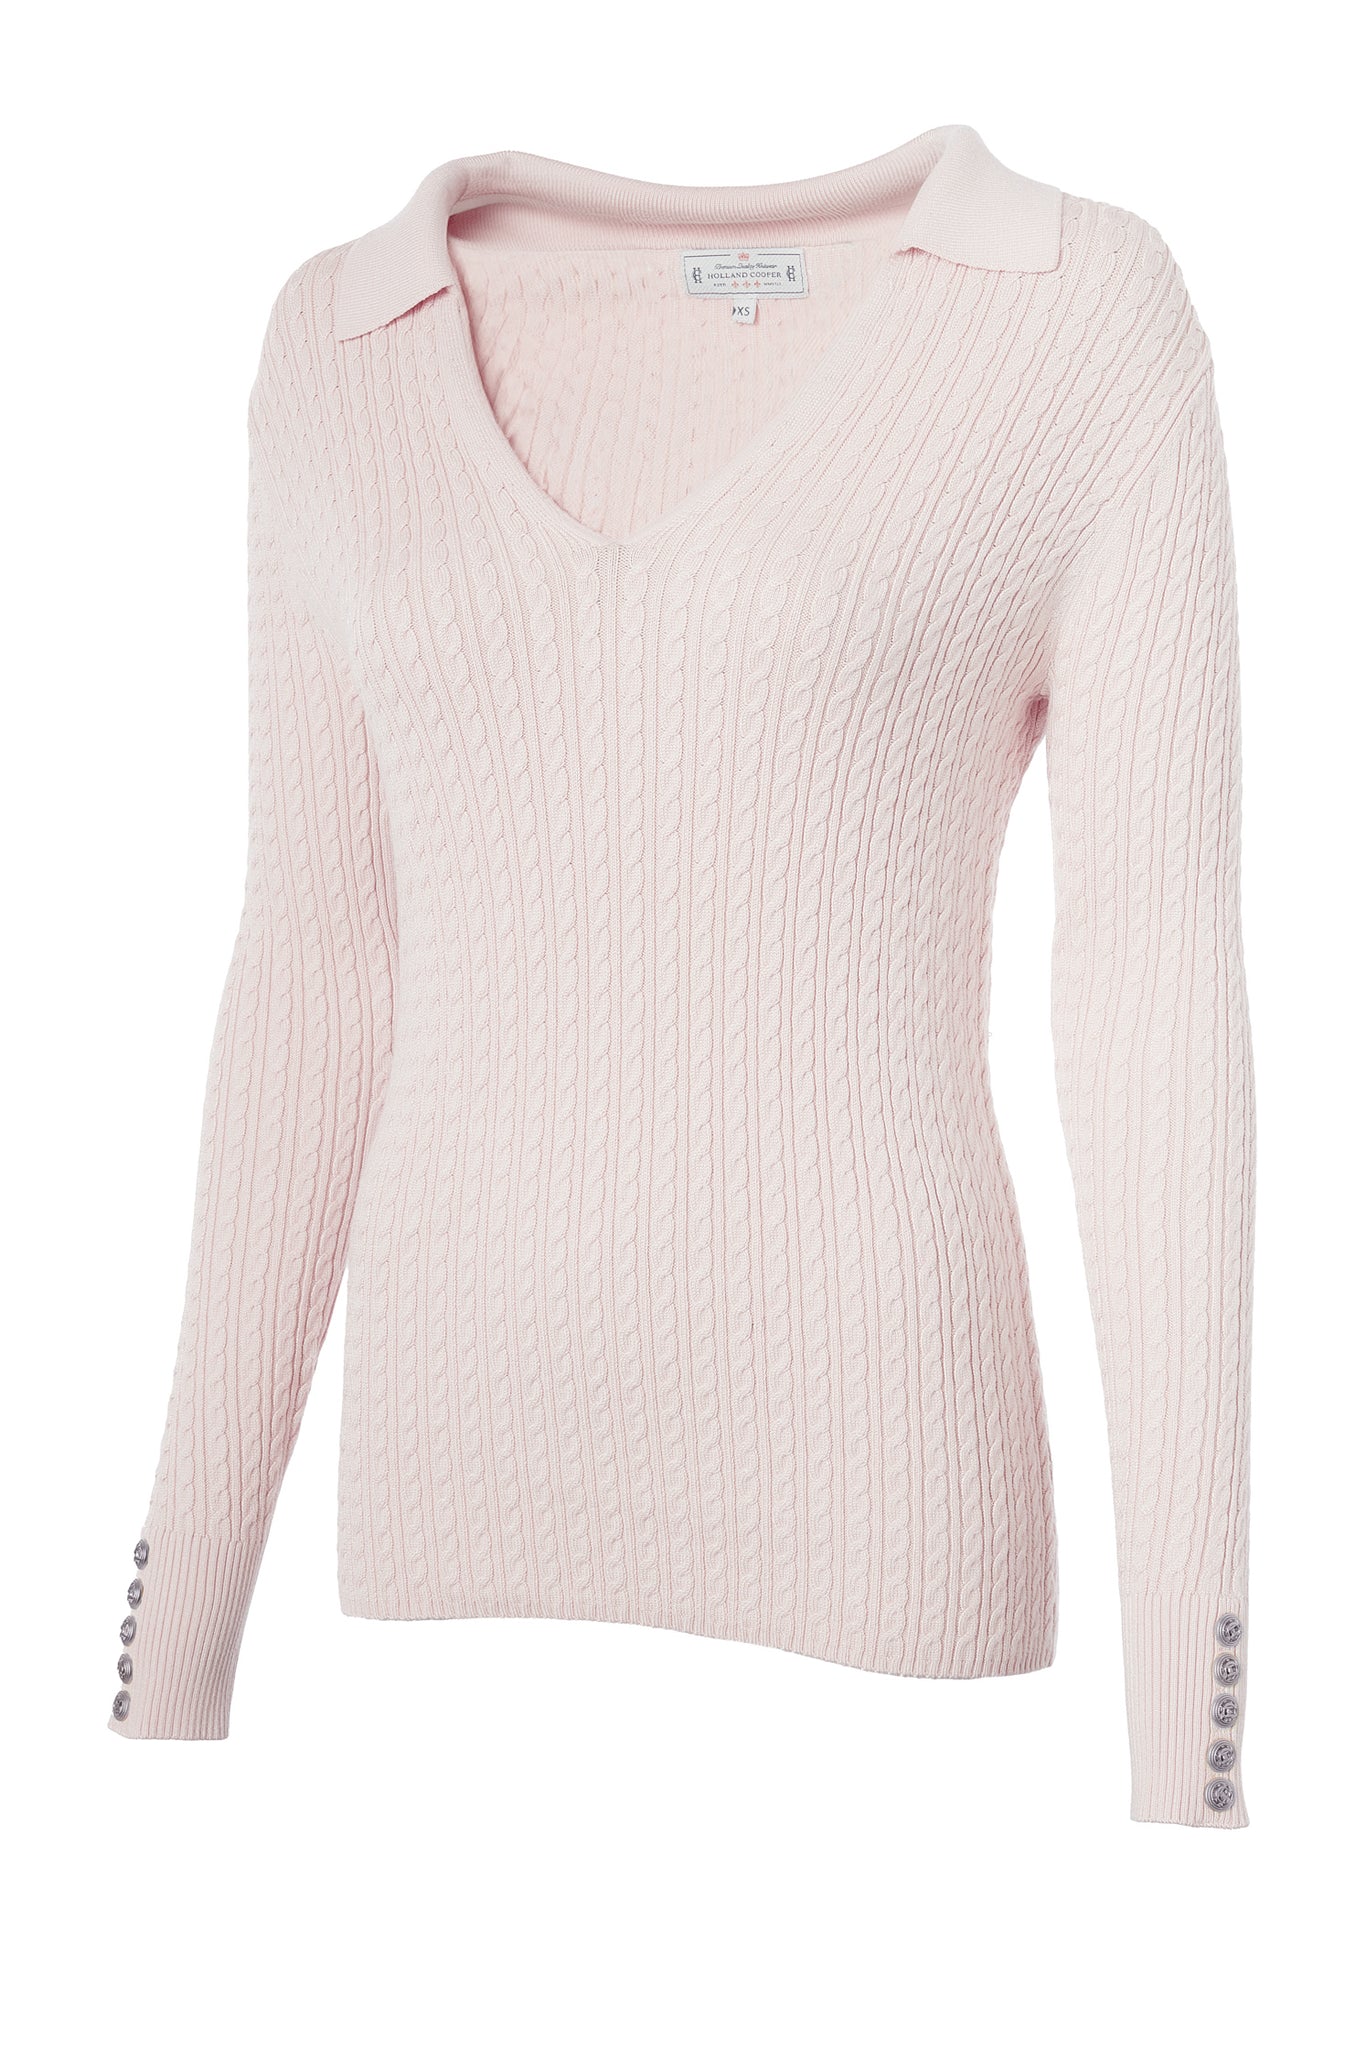 Ava Knit (Soft Pink)